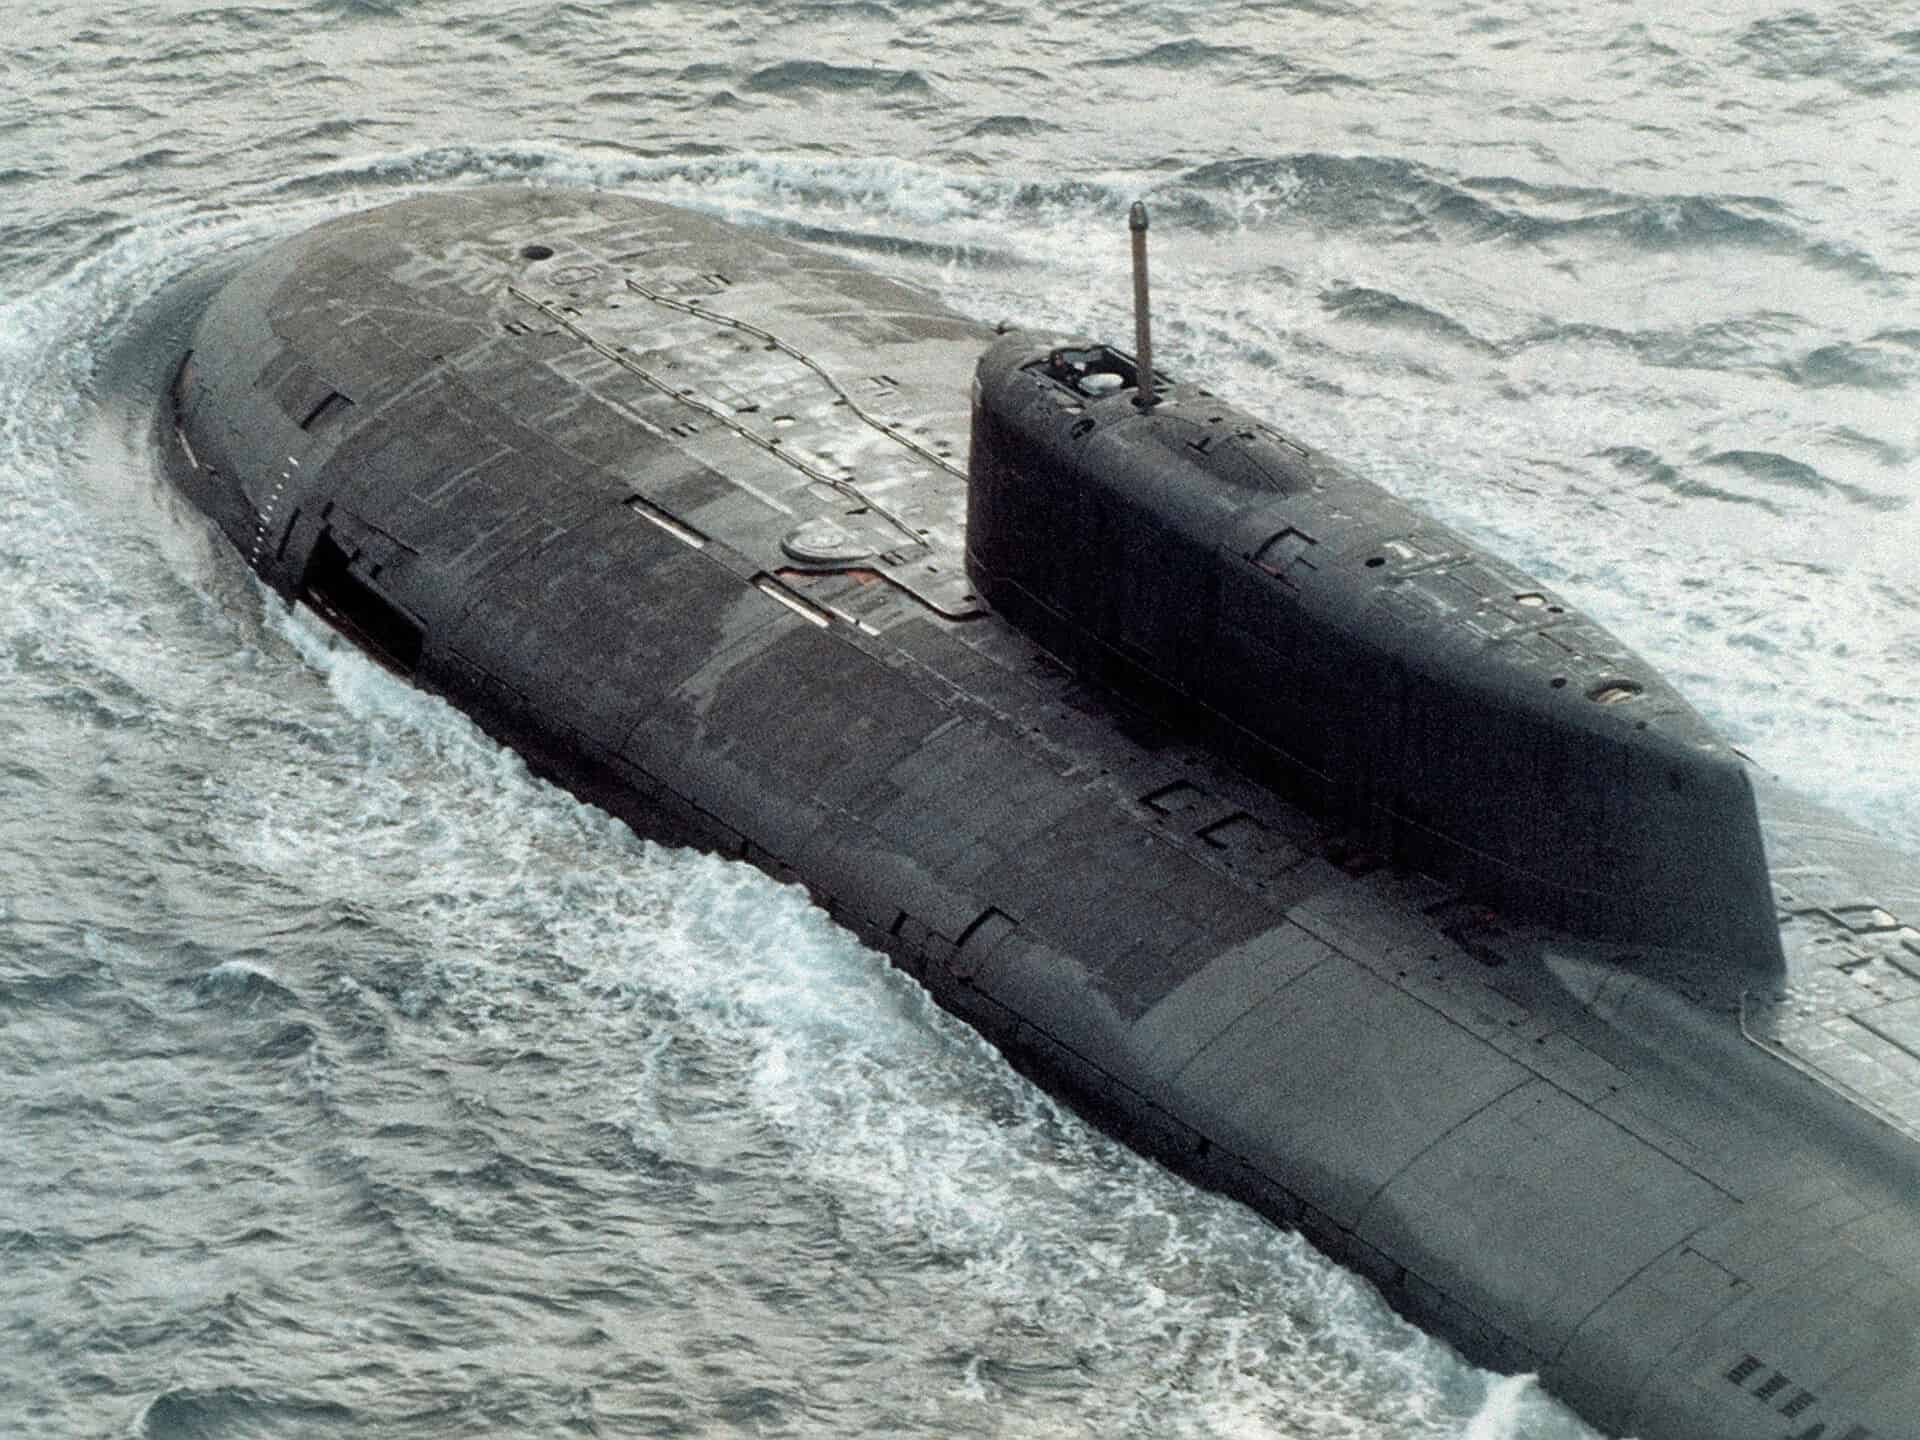 Модернизоване руске подморнице класе „Антеј“ носиће и до 100 комада хиперсоничног ракетног оружја